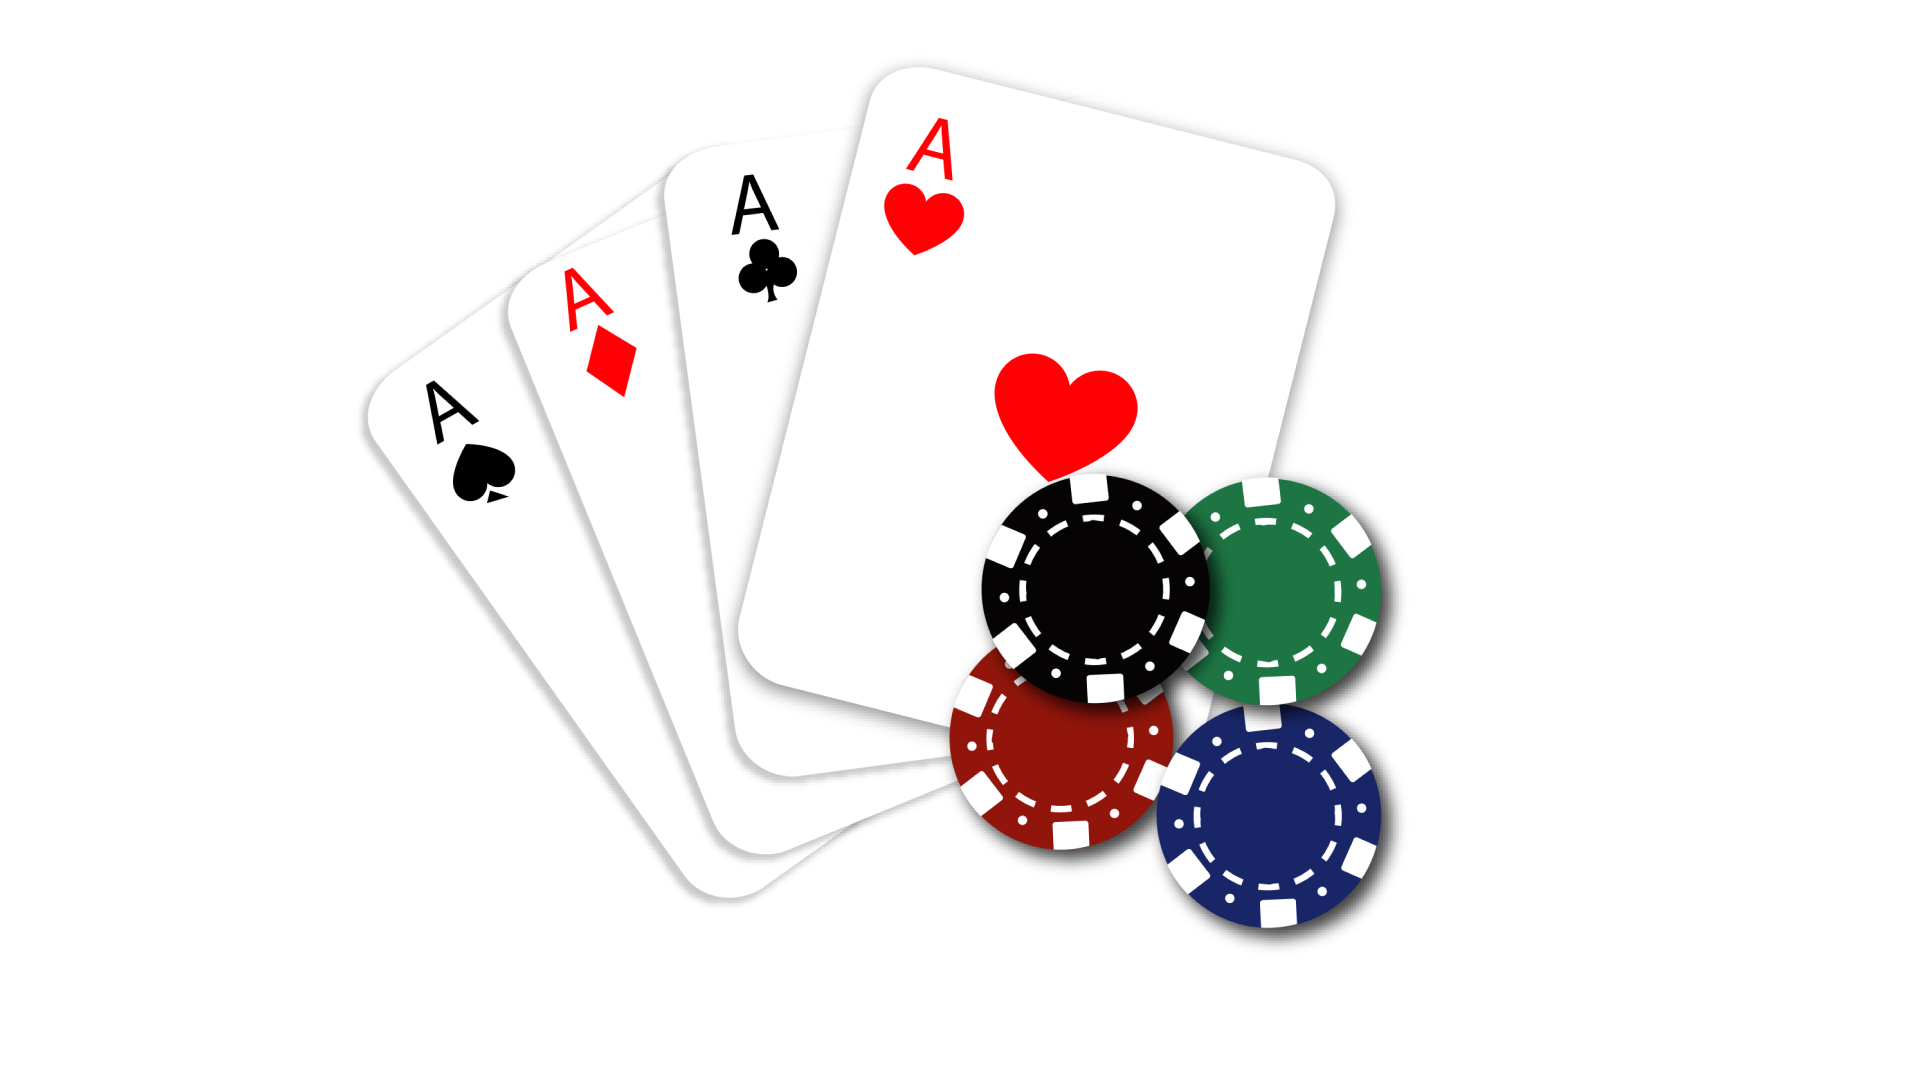 Estrategia de Bacará - Un experto nos ayuda Gratis a vencer el juego de cartas!